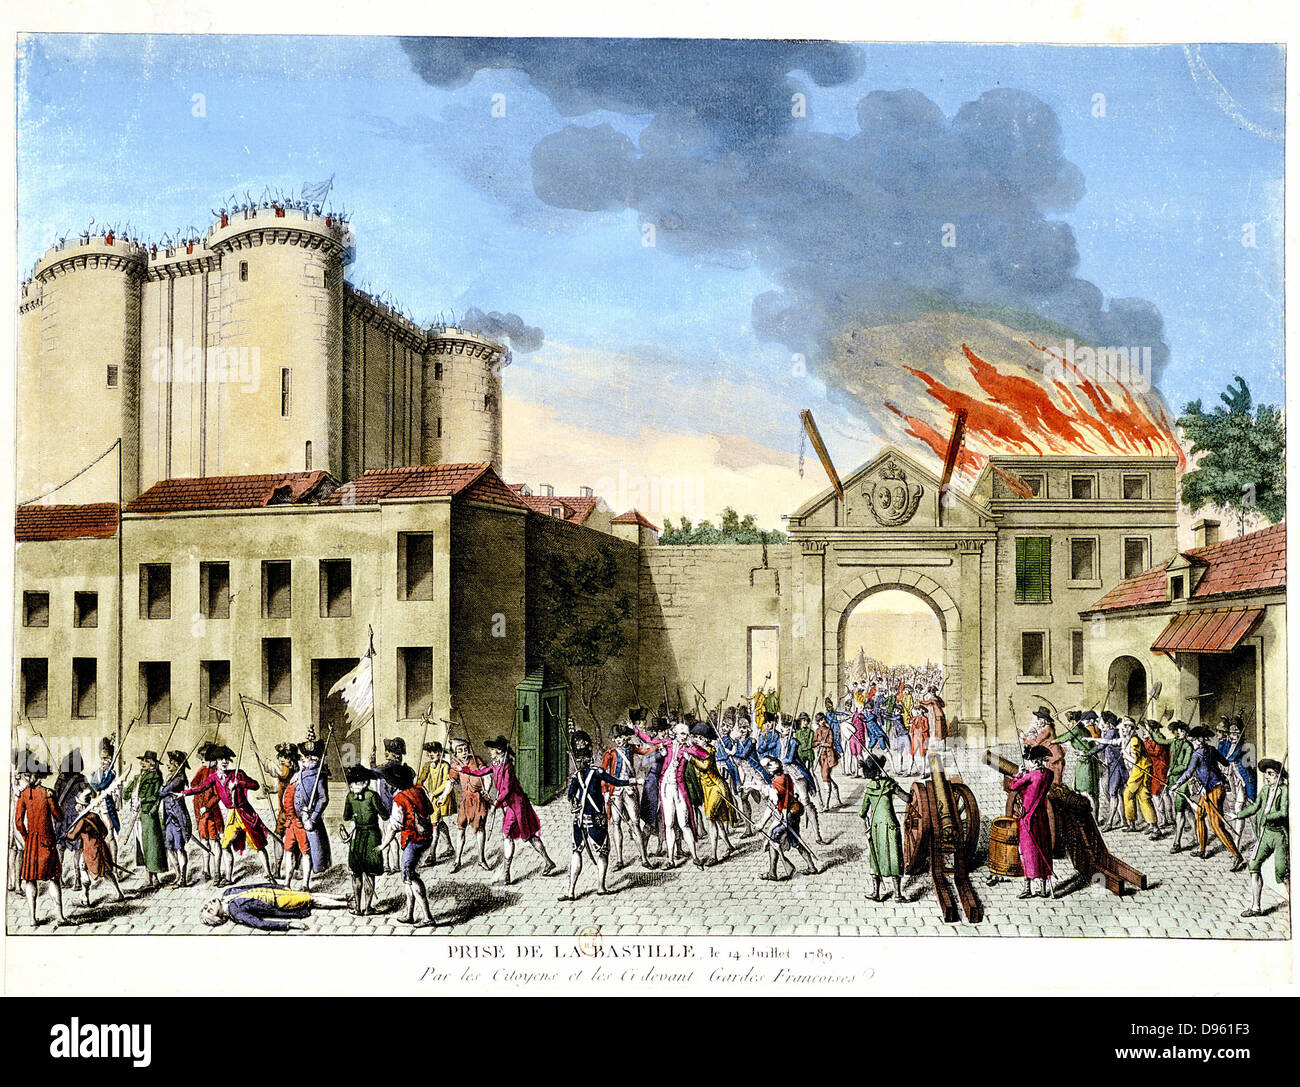 Französische Revolution, 1789. Sturm auf die Bastille, 14. Juli 1789. Mittelalterliche Festung wie der französische Staat Gefängnis im 17. und 18. Jahrhundert verwendet. Handcolorierte Kupferstich. Stockfoto